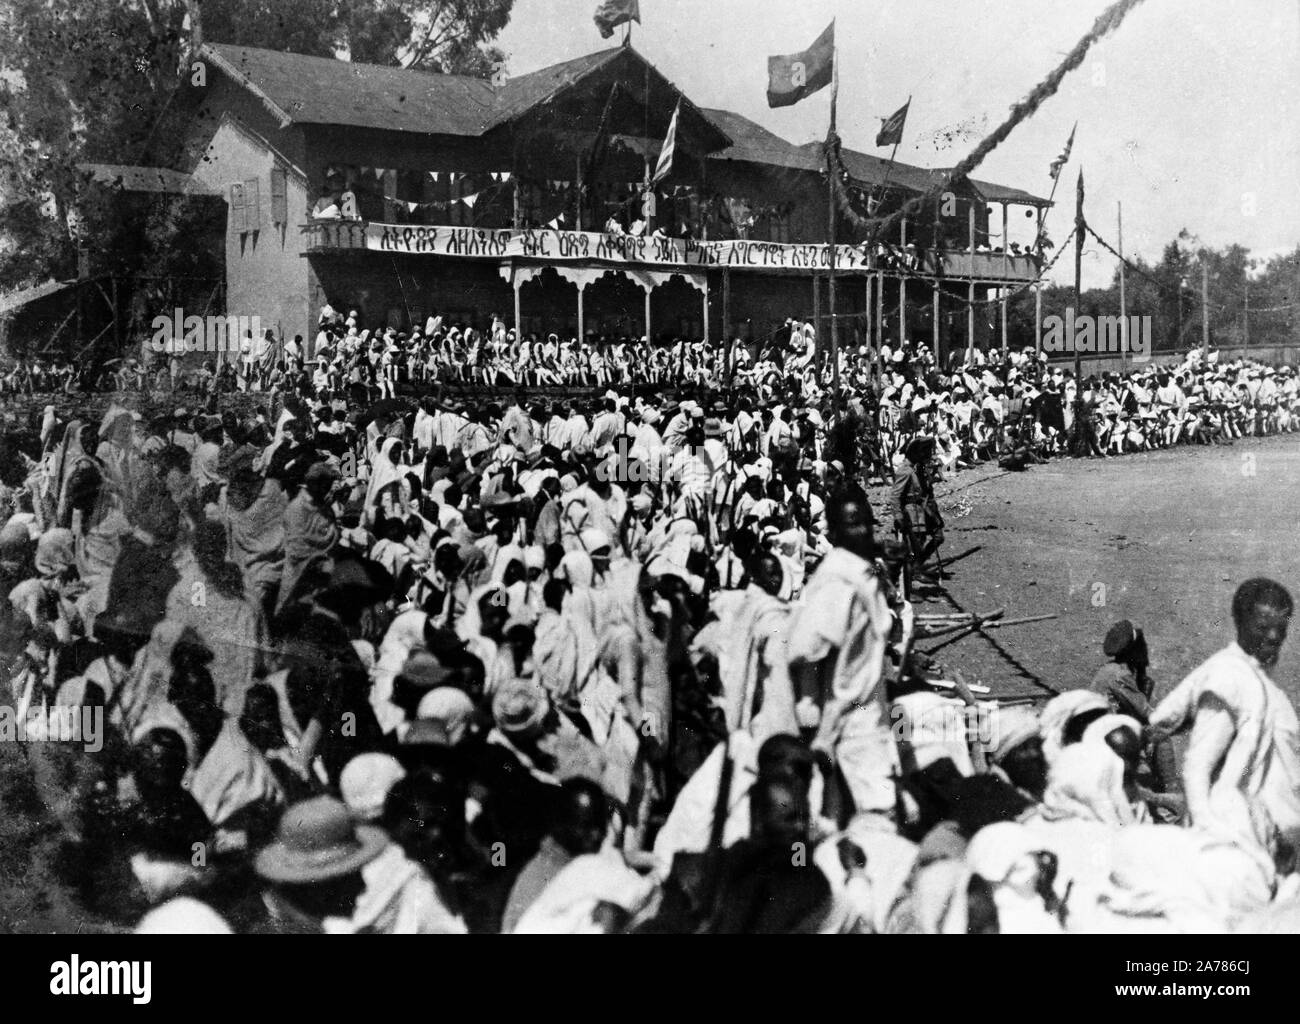 La cérémonie de couronnement de tafari maconnen, Addis Ababa, Ethiopie 1930 Banque D'Images